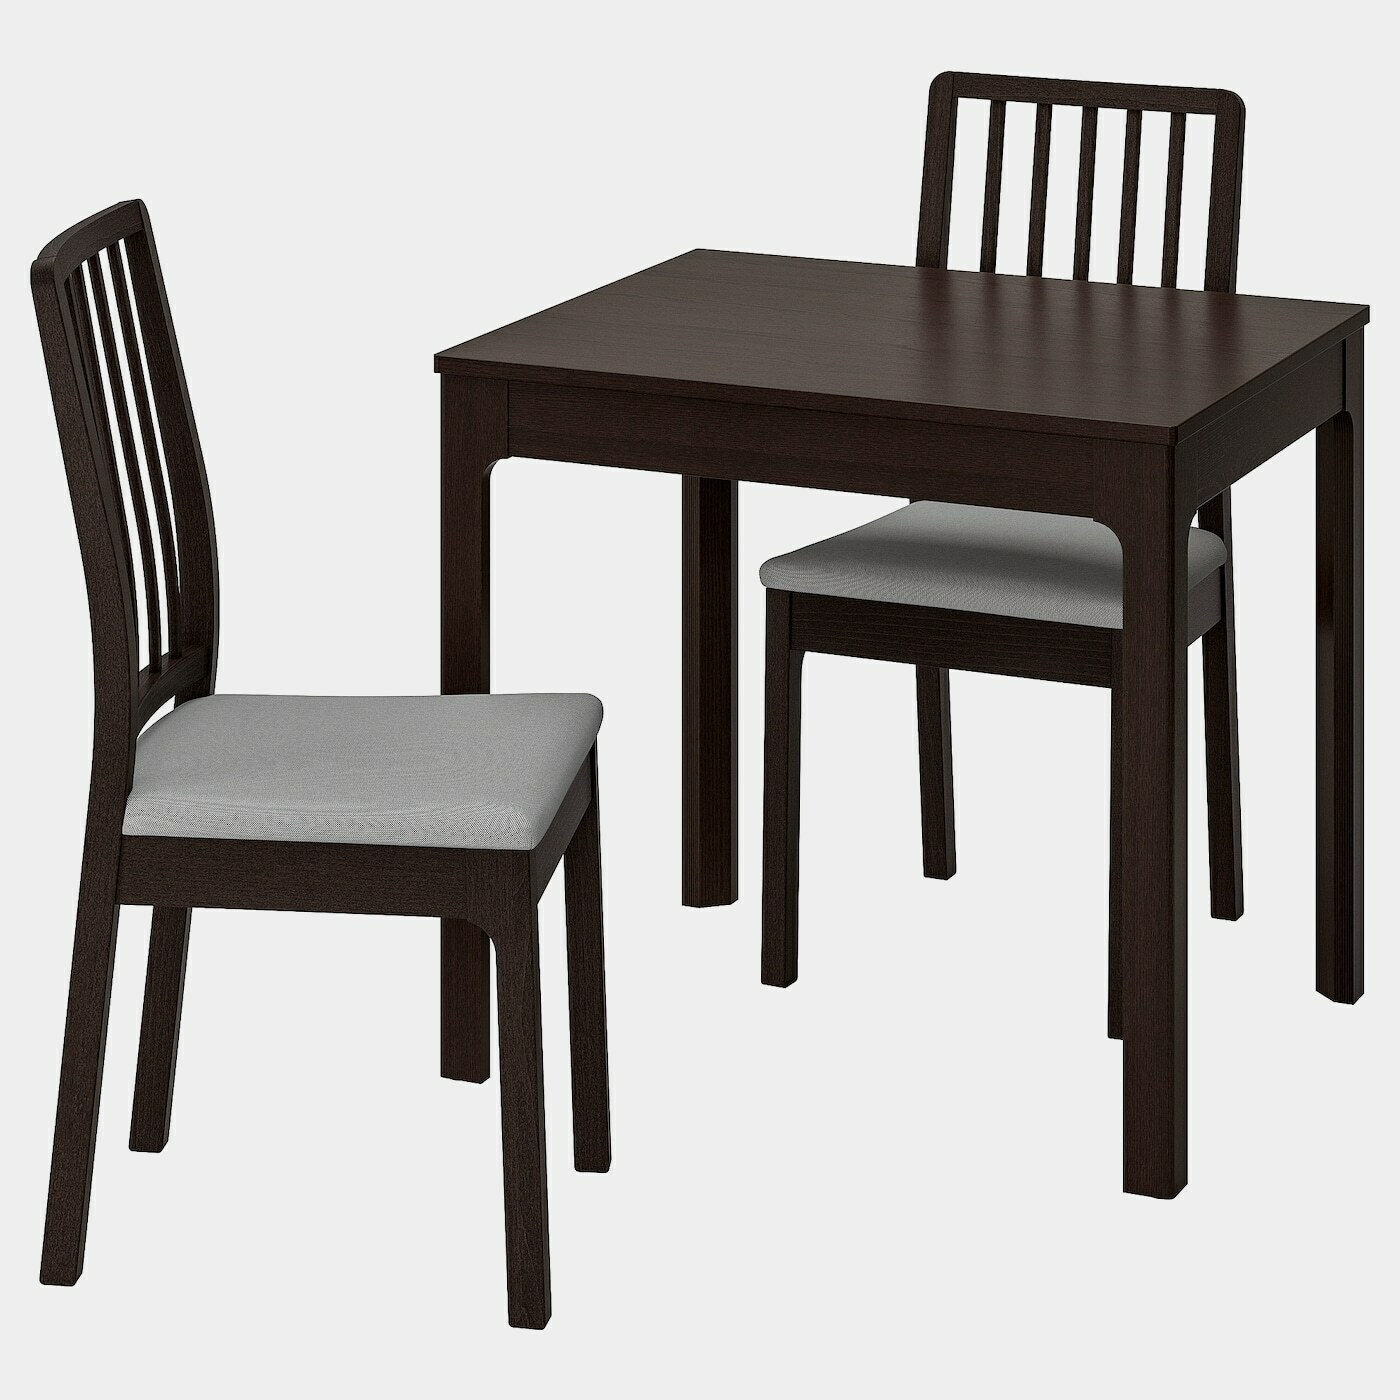 EKEDALEN / EKEDALEN Tisch und 2 Stühle  - Essplatzgruppe - Möbel Ideen für dein Zuhause von Home Trends. Möbel Trends von Social Media Influencer für dein Skandi Zuhause.